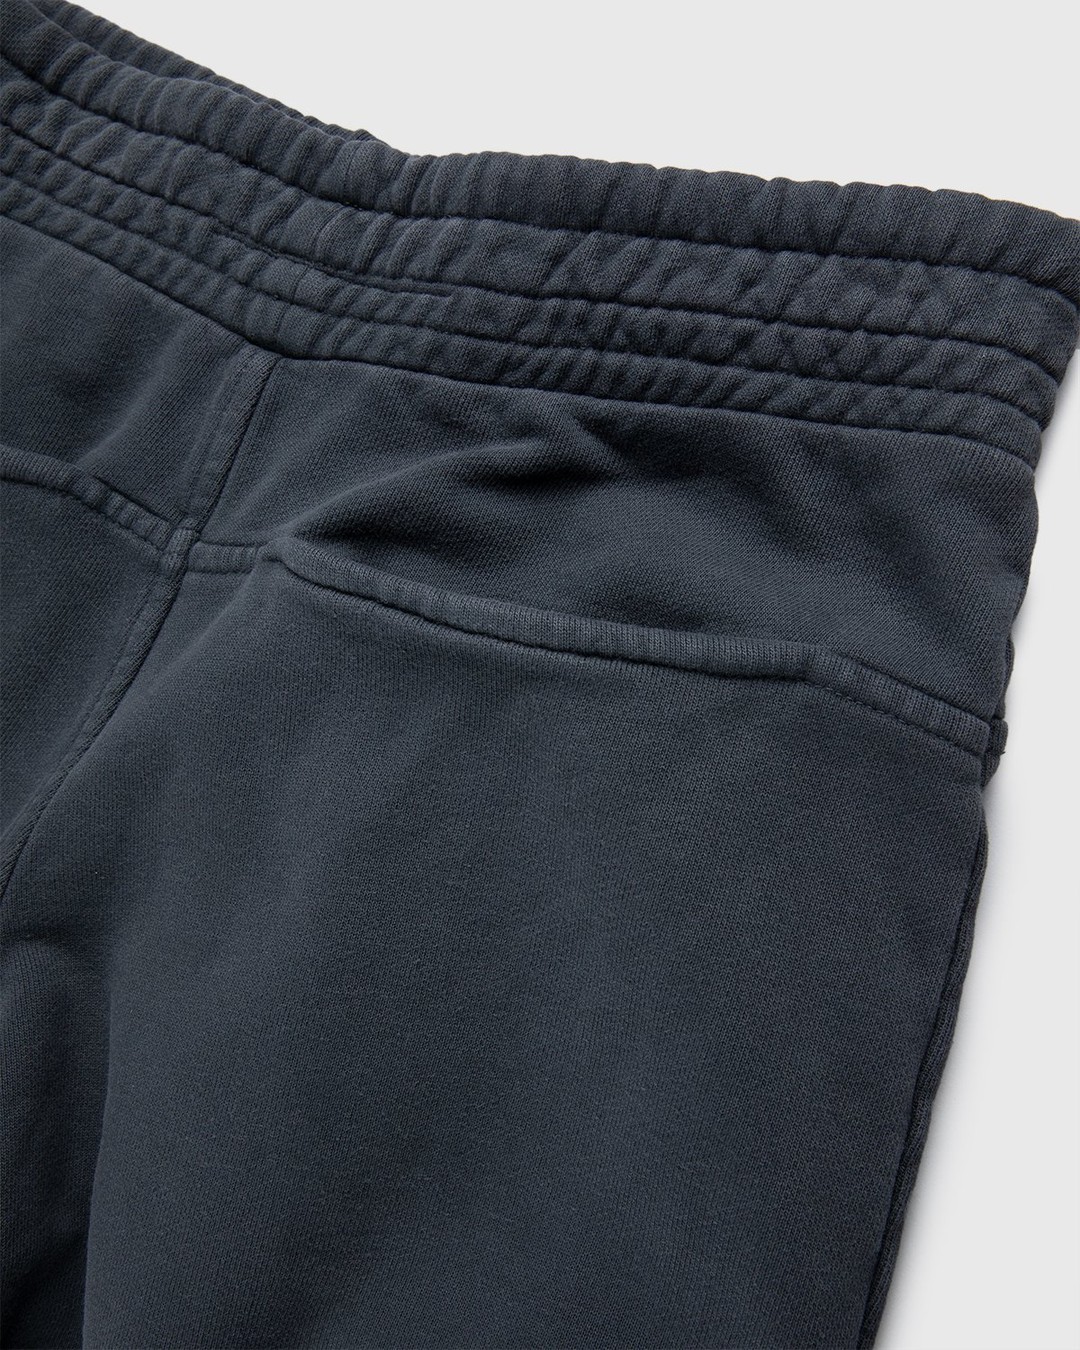 Darryl Brown – Gym Pants Vintage Black - Pants - Black - Image 4